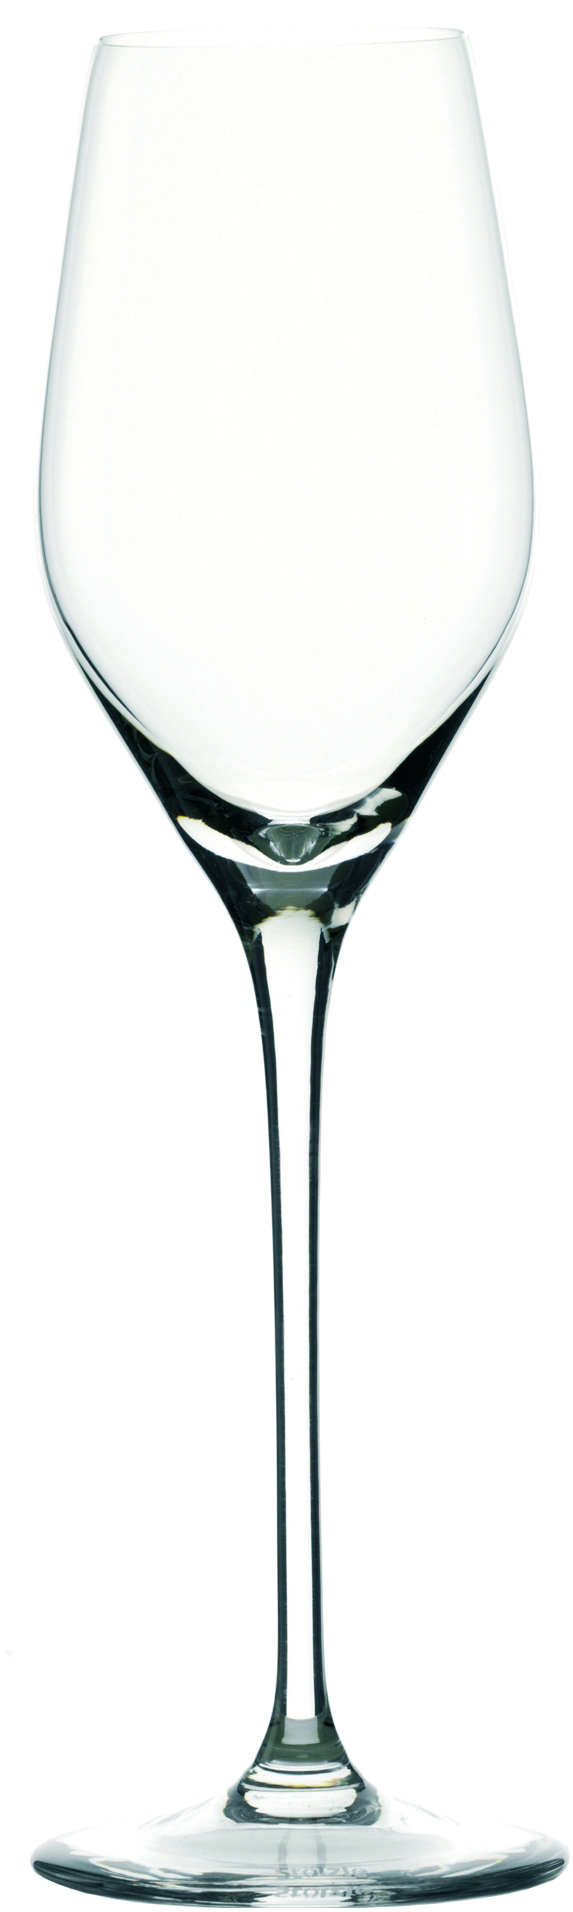 Champagne glass Exquisit Royal, Stölzle Lausitz - 265ml (1 pc.)